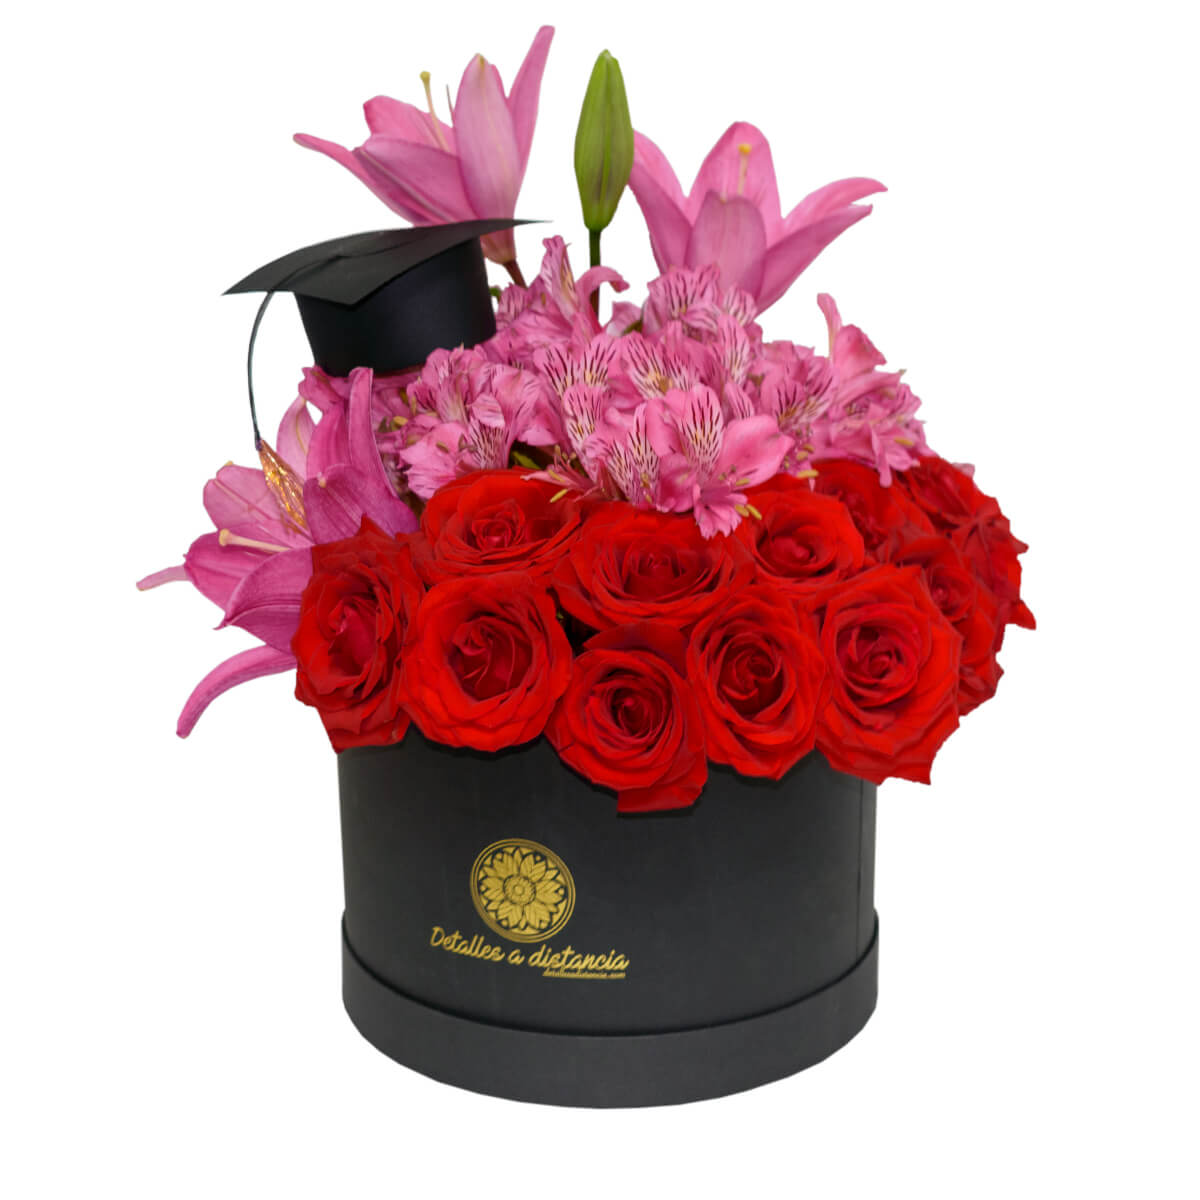 Caja de flores para graduado - Detalles a distancia | Regalo para graduado